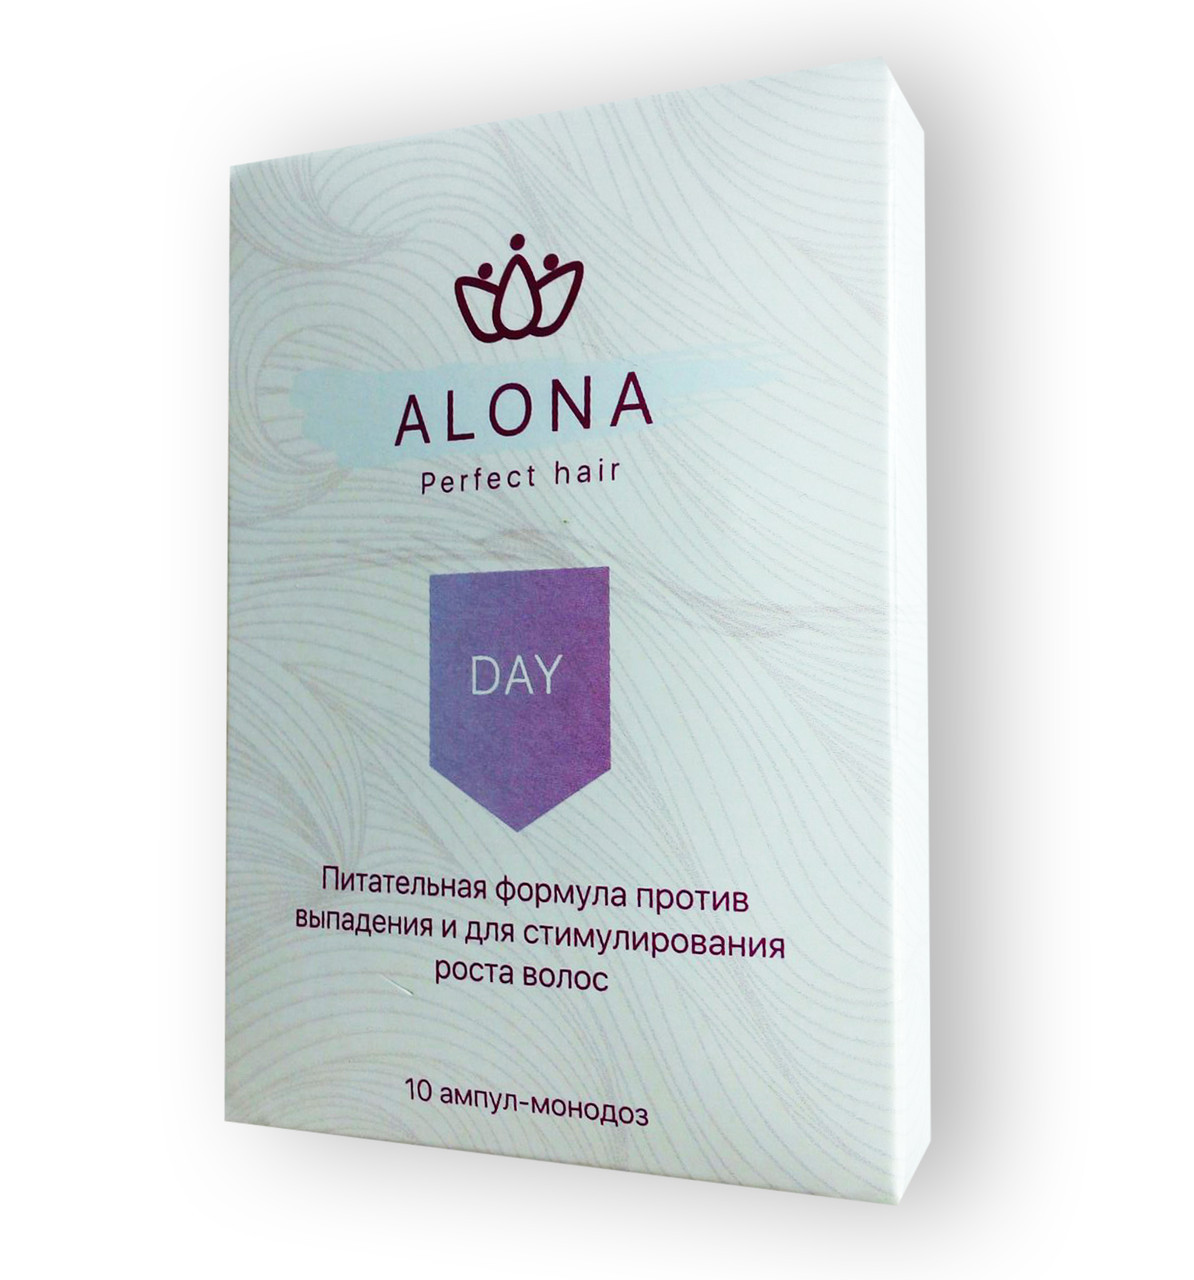 Alona Perfect Hair - Ампулы против выпадения и для стимулирования роста волос День (Алона)